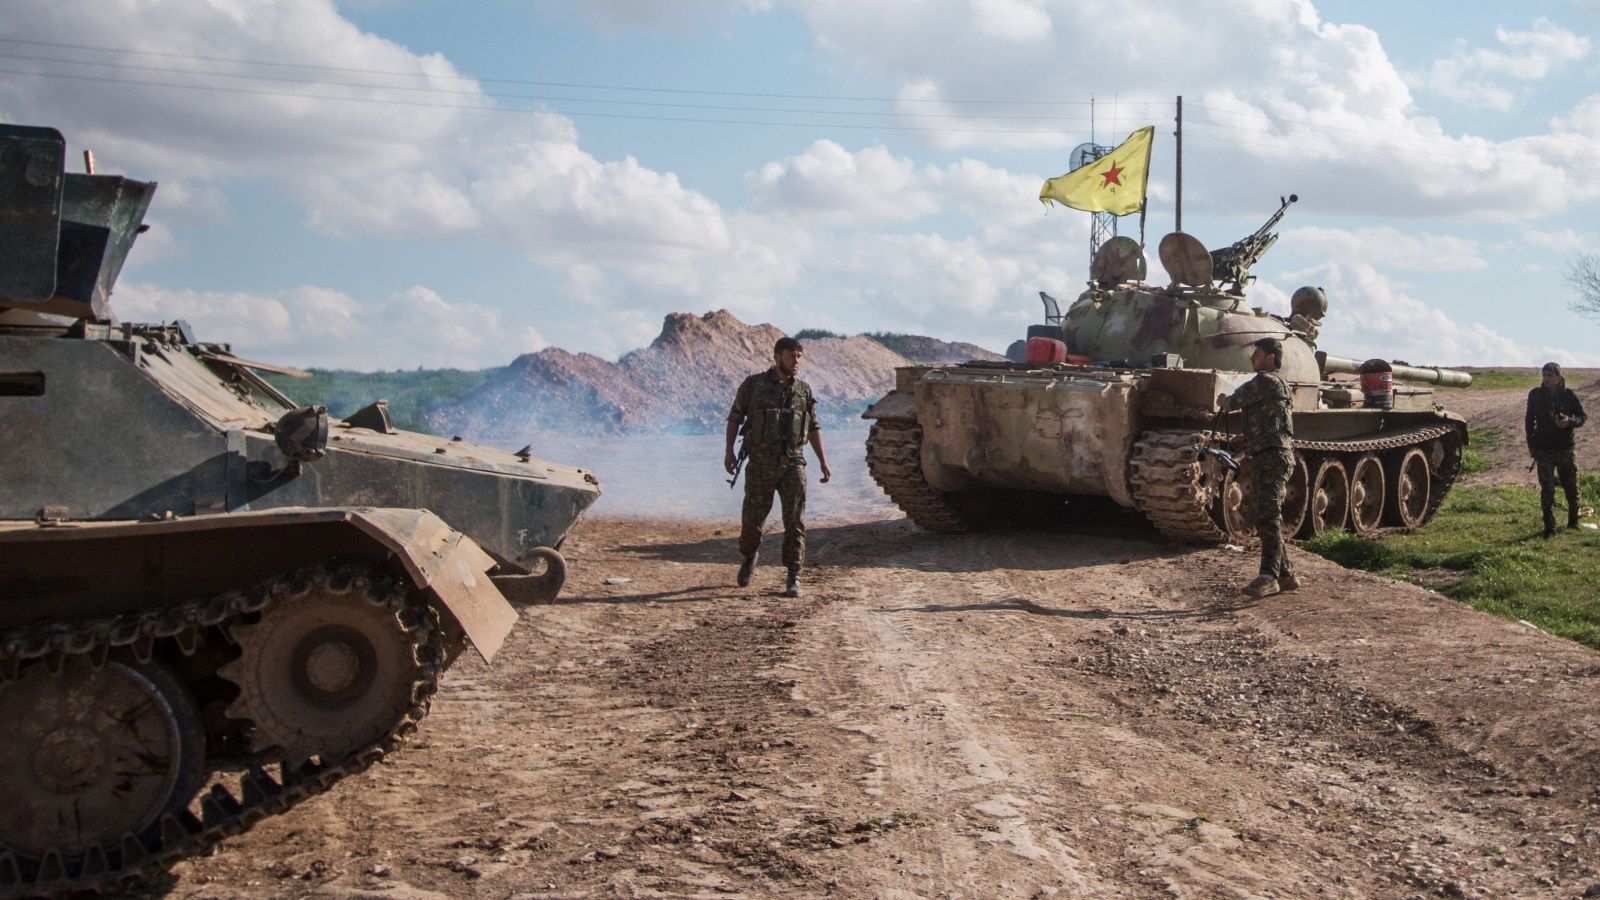  وحدات حماية الشعب الكردي التي تدعمها الولايات المتحدة (رويترز)